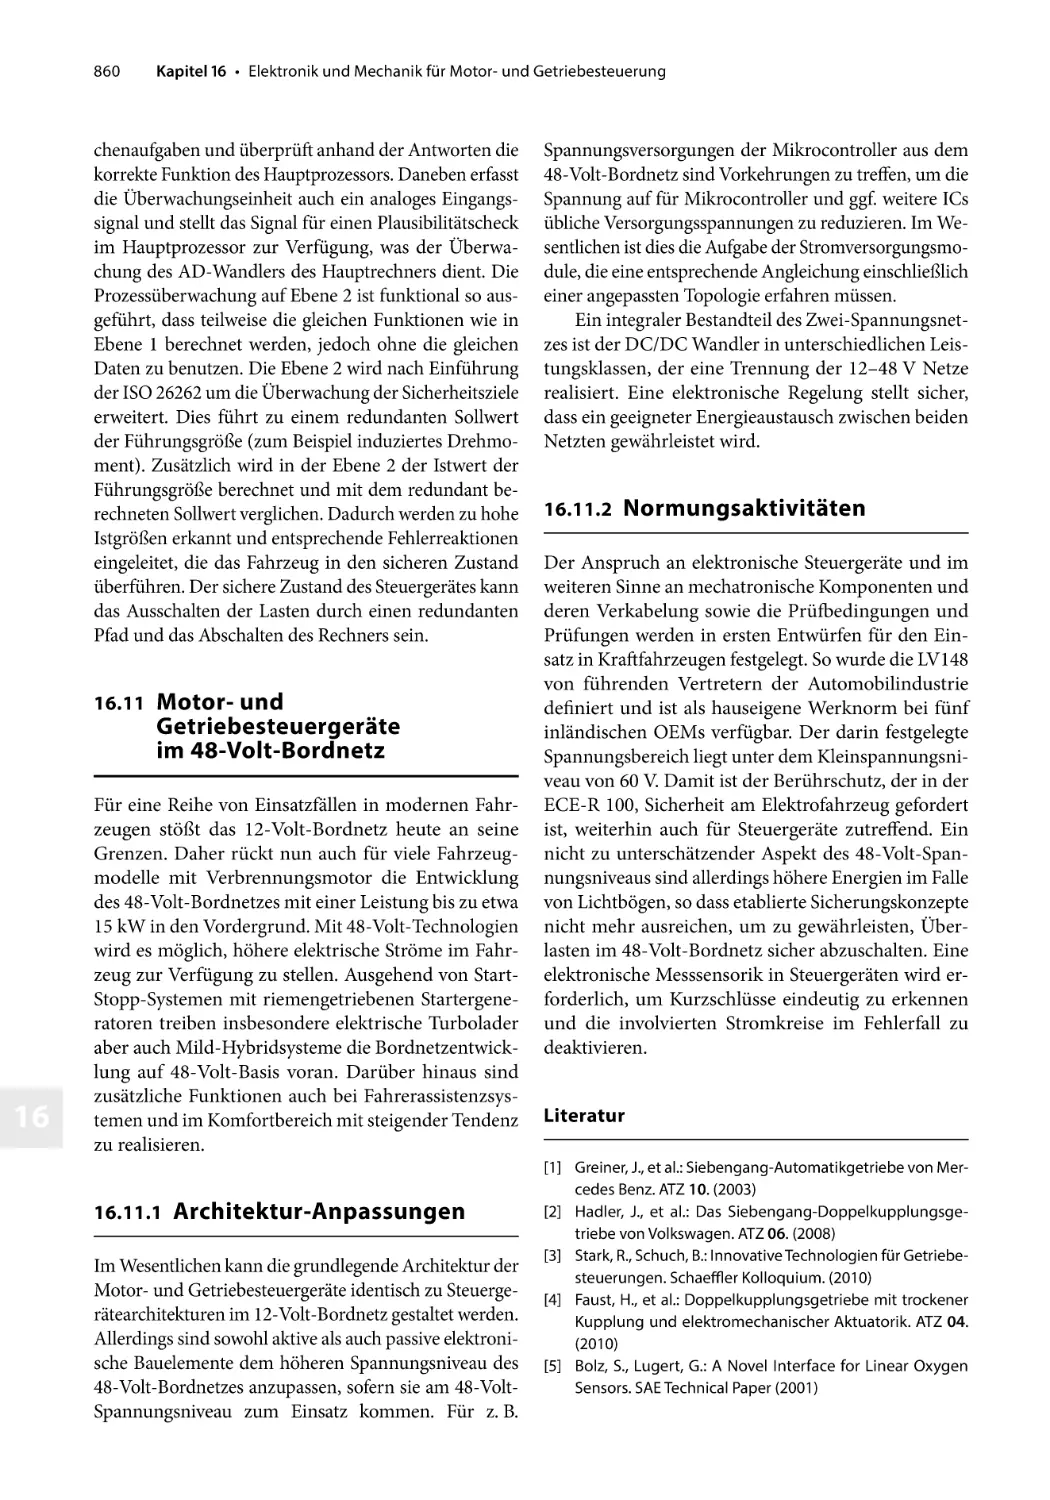 Literatur
16.11 Motor- und Getriebesteuergeräte im 48-Volt-Bordnetz
16.11.1 Architektur-Anpassungen
16.11.2 Normungsaktivitäten